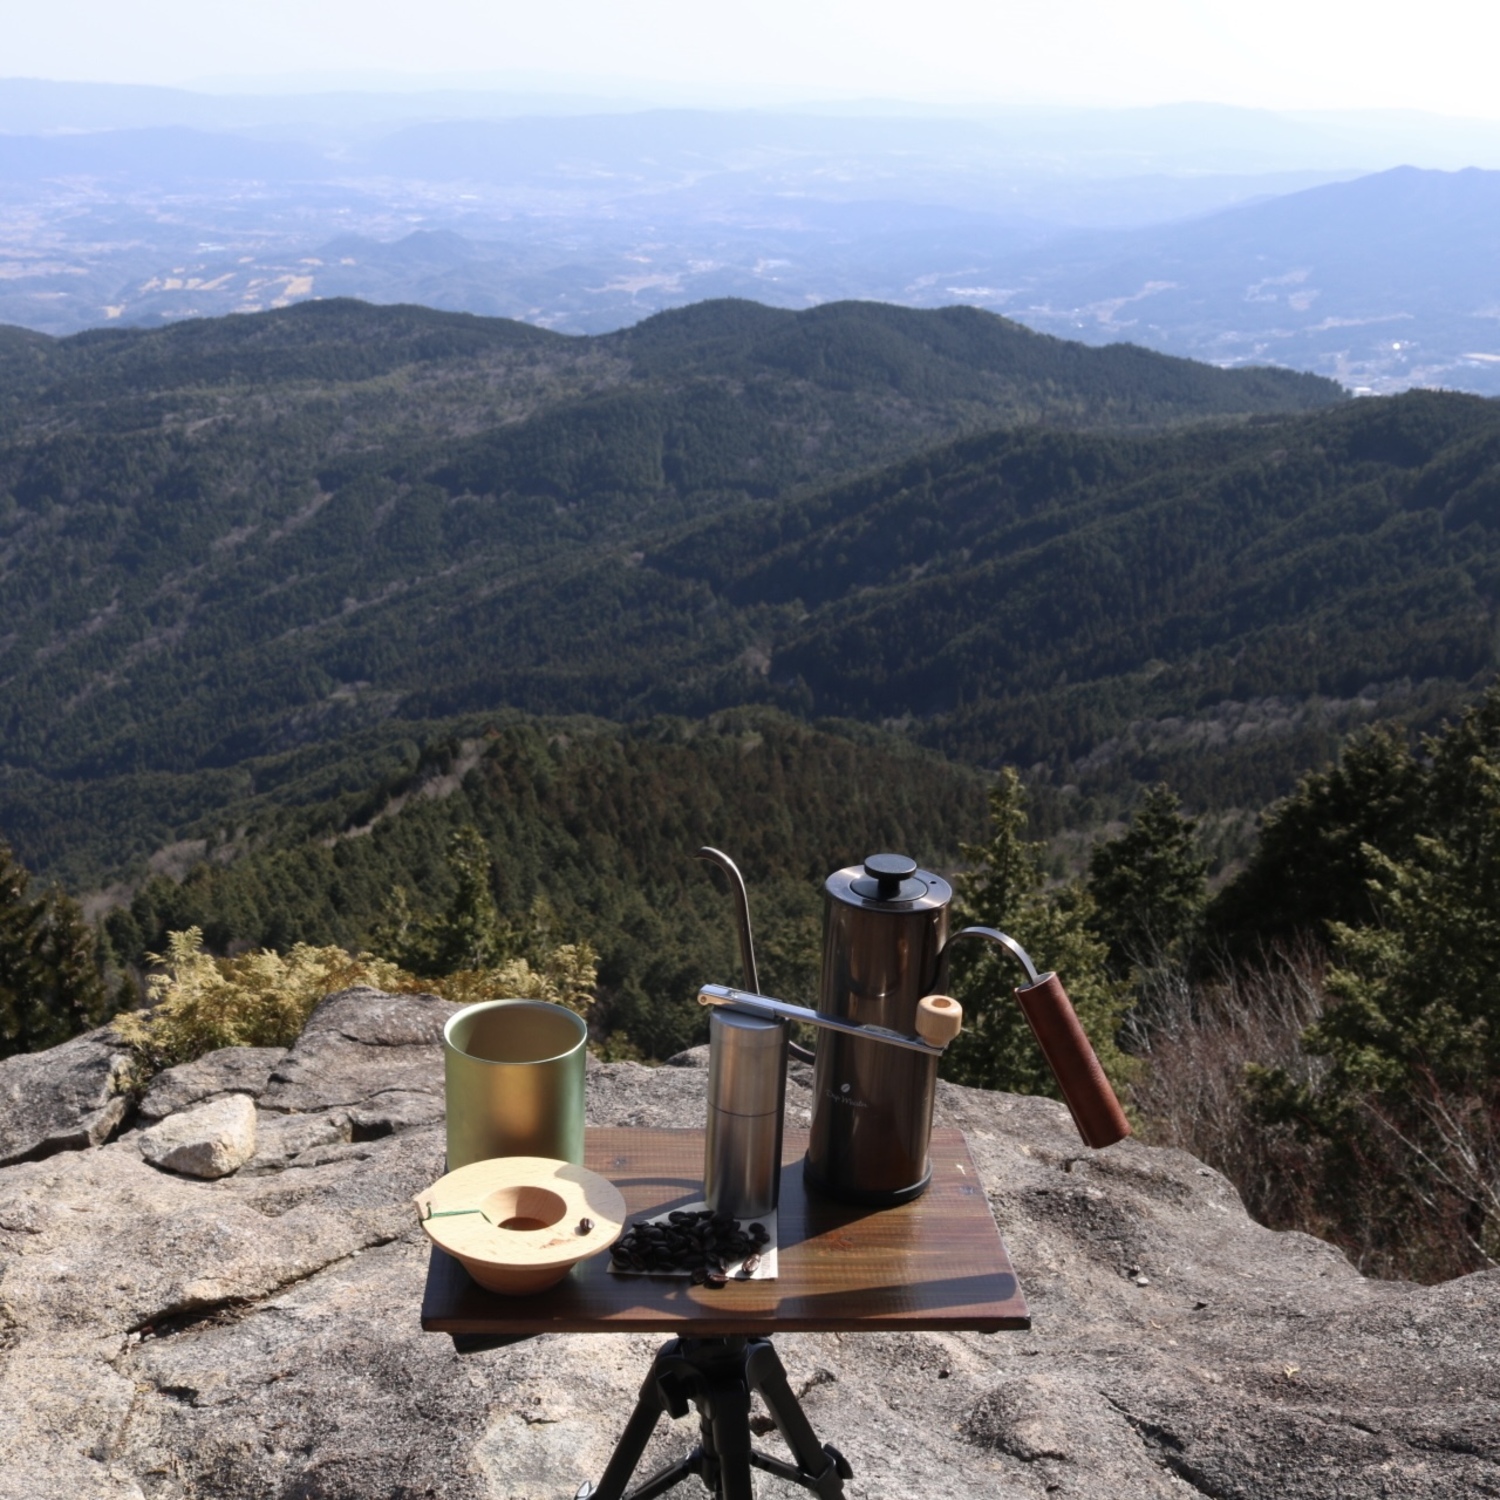 山頂にコーヒーセットが置かれている。